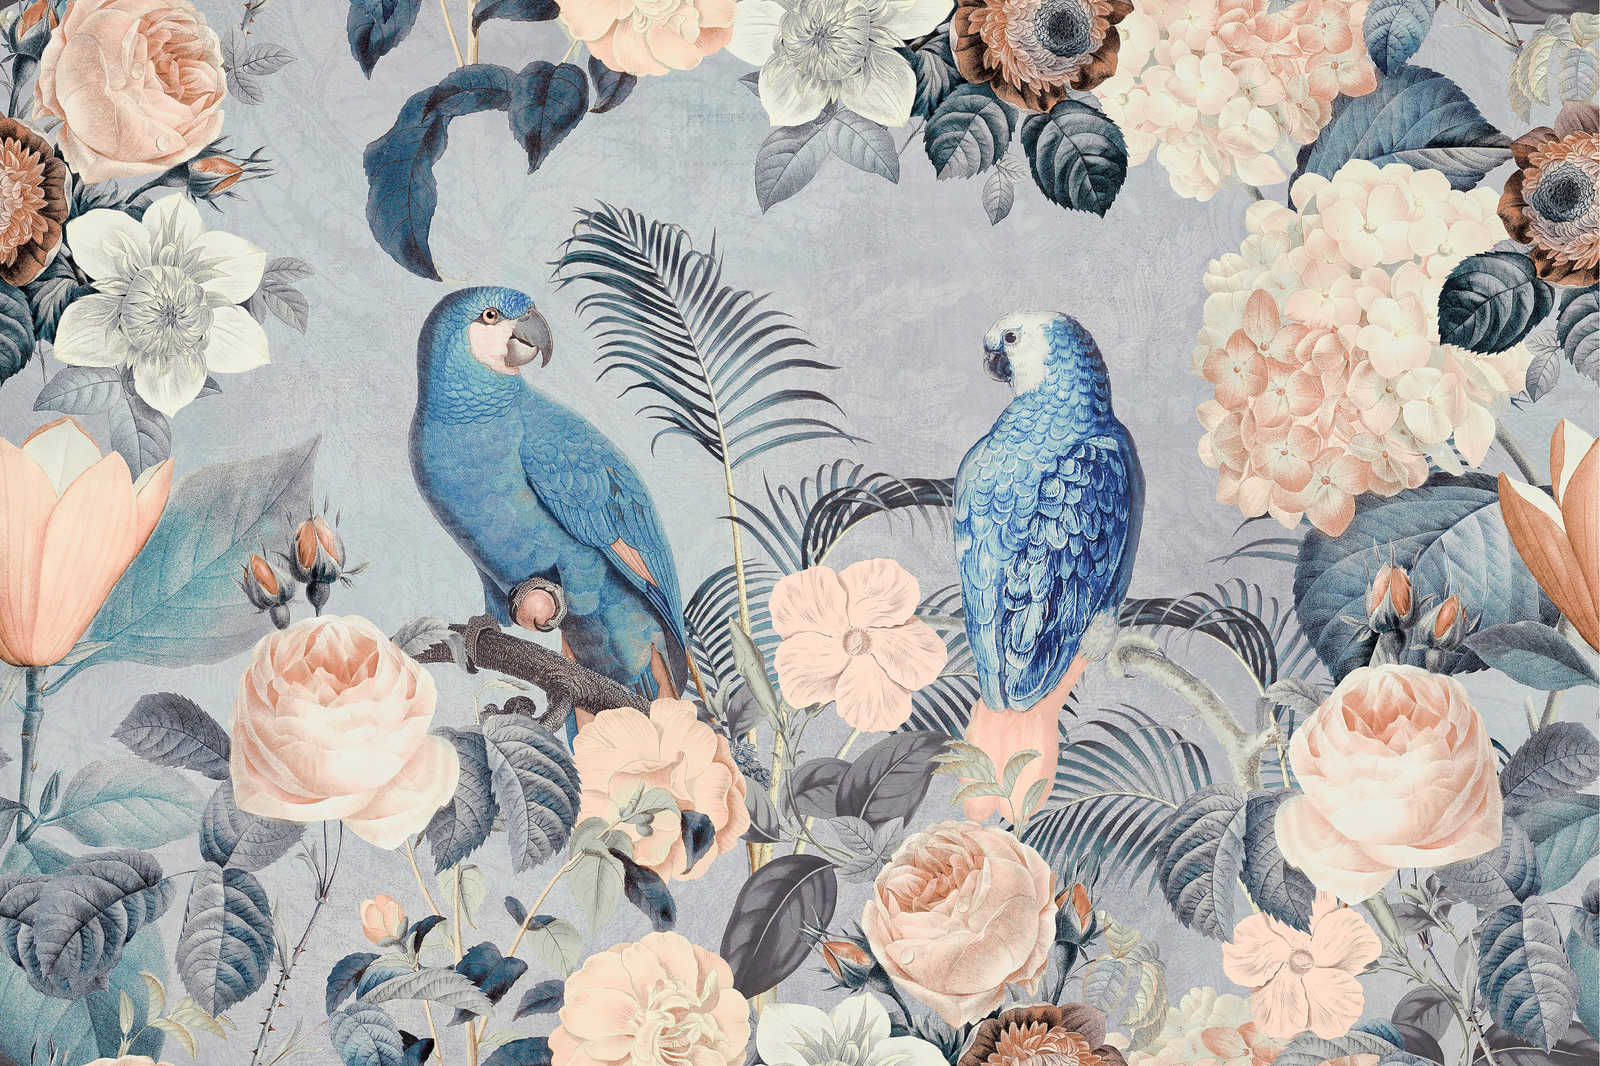             Canvas painting Parrots Rendezvous with flowers design - 1.20 m x 0.80 m
        